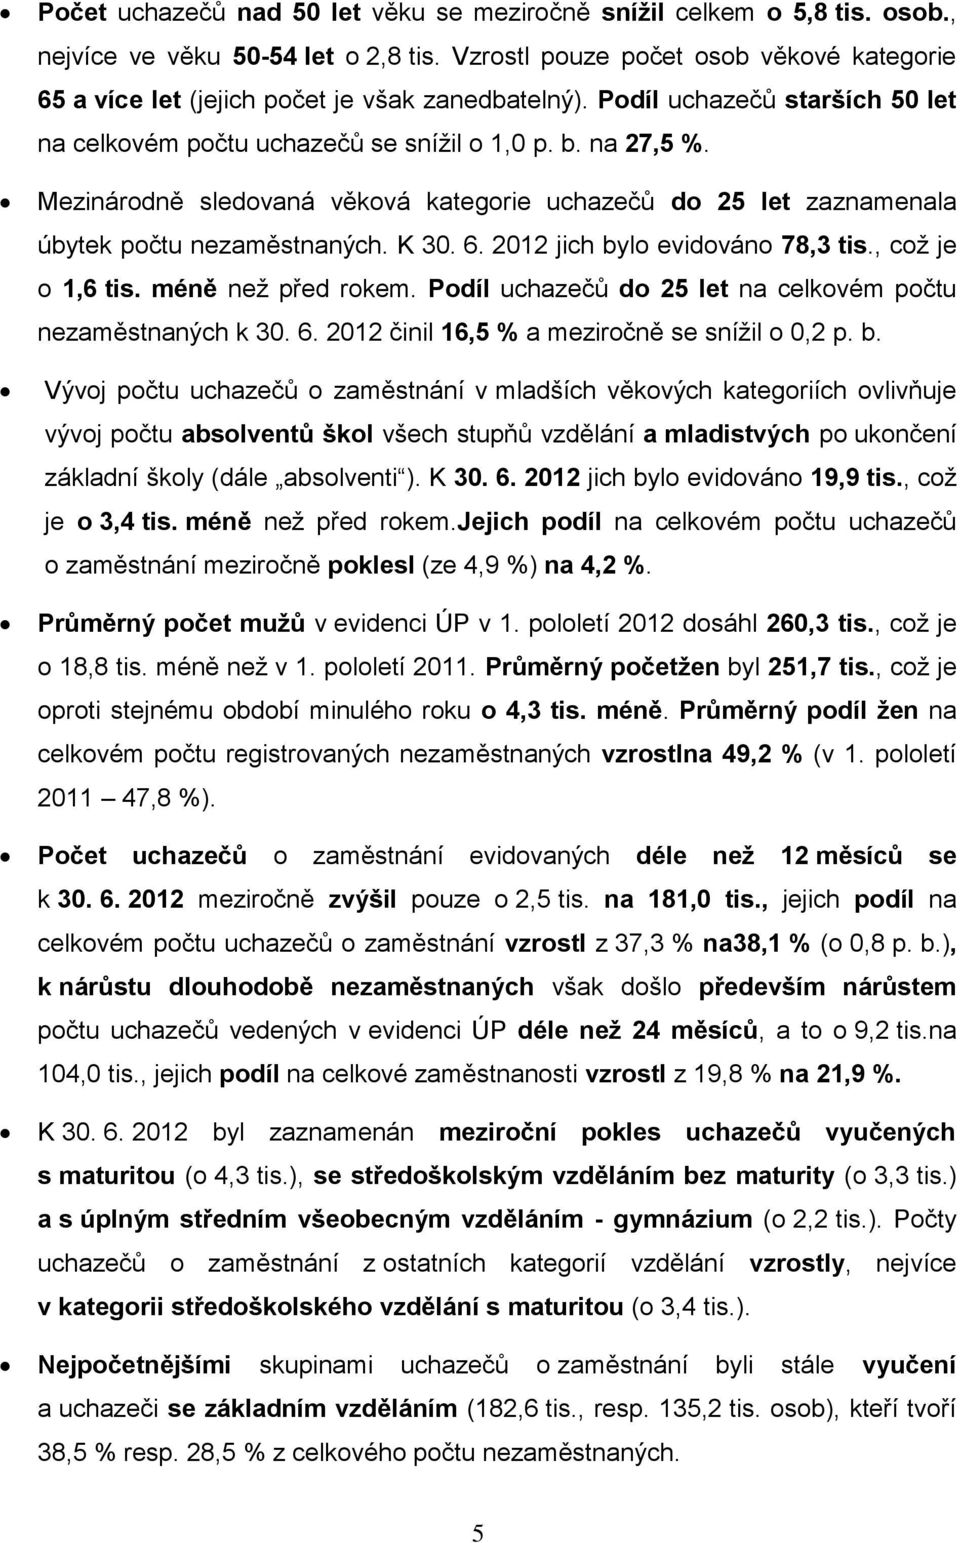 Mezinárodně sledovaná věková kategorie uchazečů do 25 let zaznamenala úbytek počtu nezaměstnaných. K 30. 6. 2012 jich bylo evidováno 78,3 tis., coţ je o 1,6 tis. méně neţ před rokem.